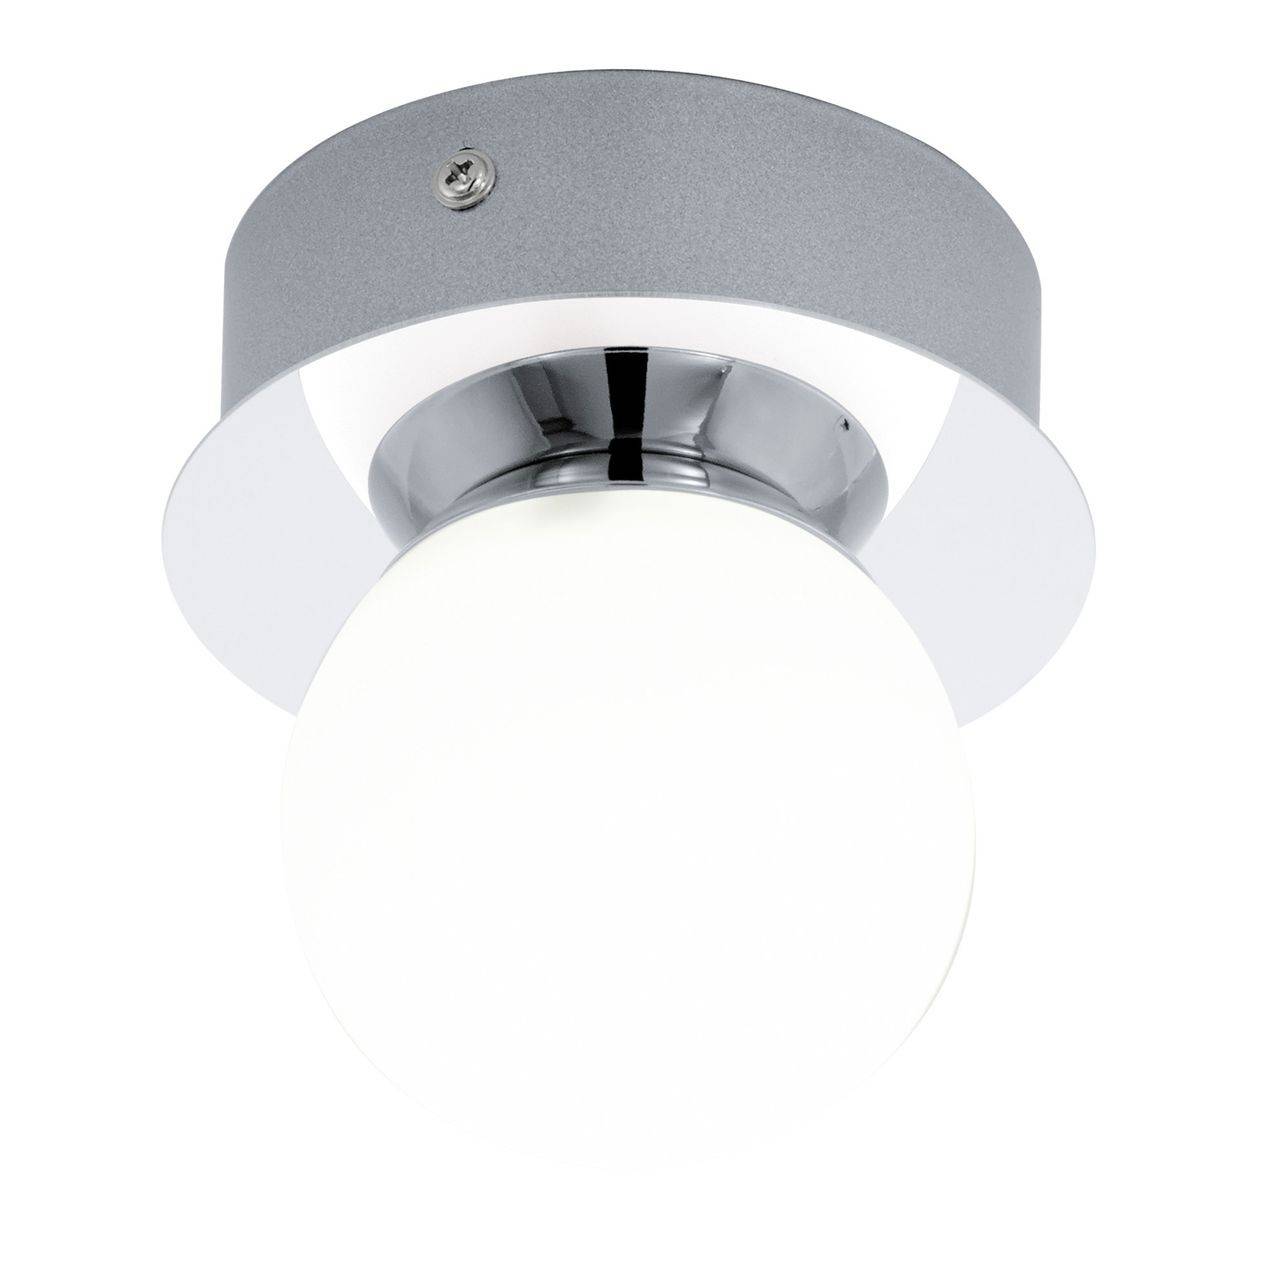 Влагостойкие светодиодные бра, встроенные светильники или споты для ванной комнаты: схема крепления и расположения на потолке и стенах